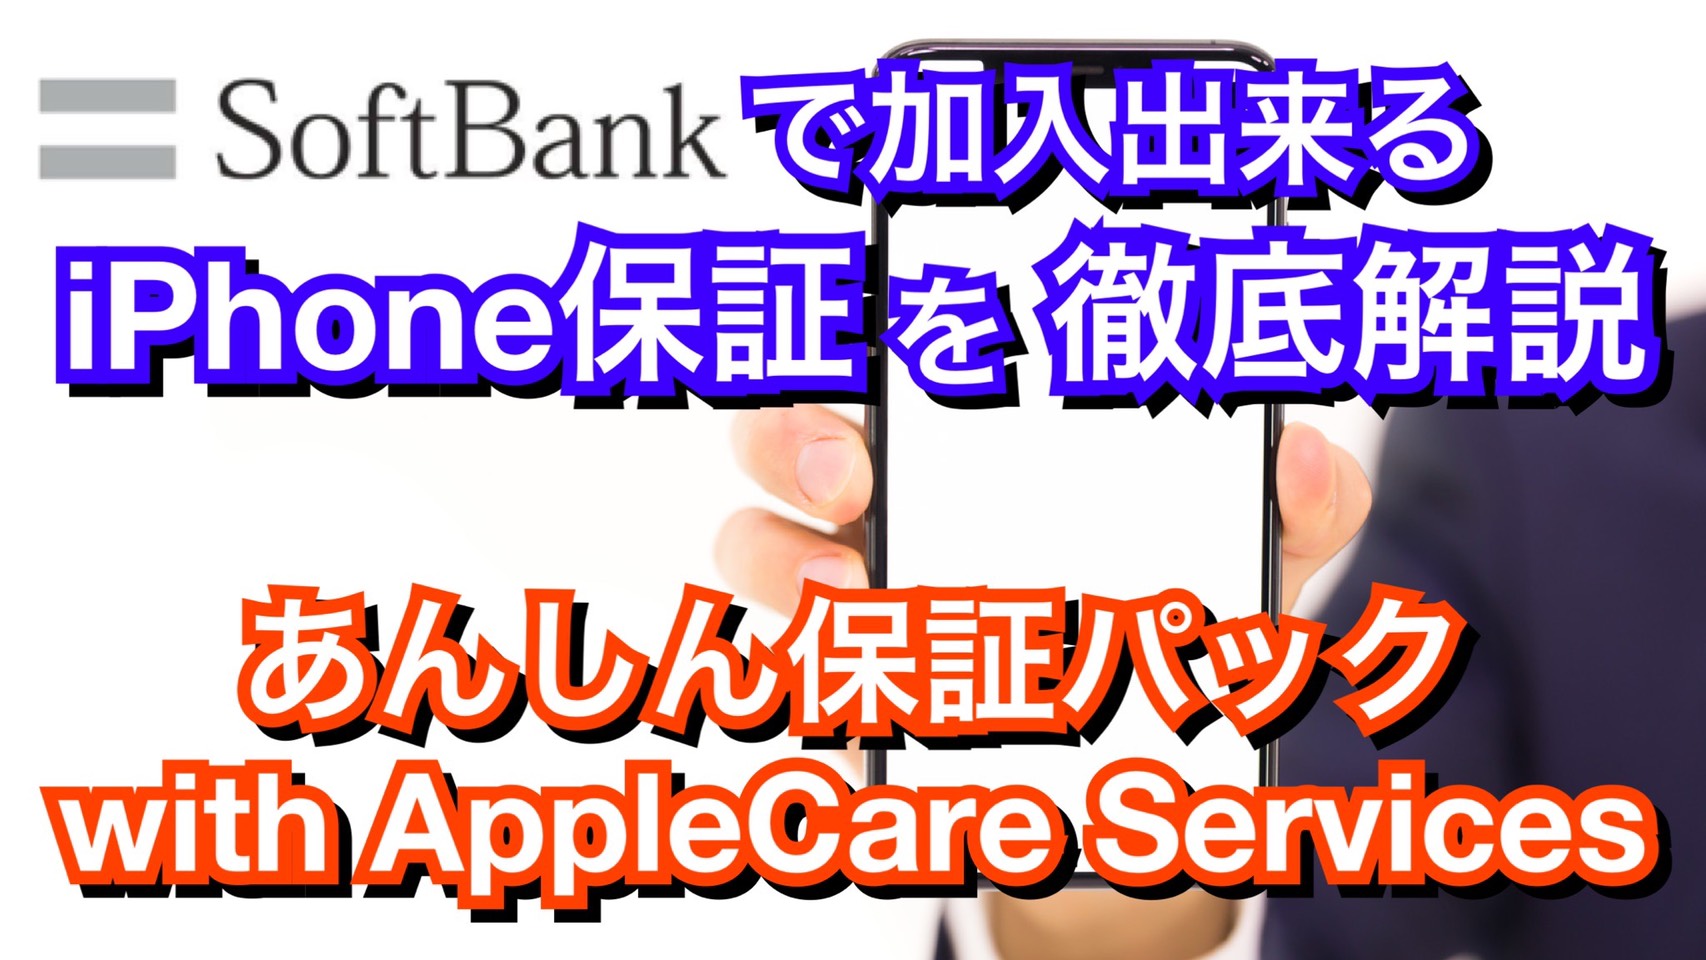 解説 Softbankのiphone保証 あんしん保証パック With Applecare Services を徹底解説 Iphone 修理ならスマホバスター